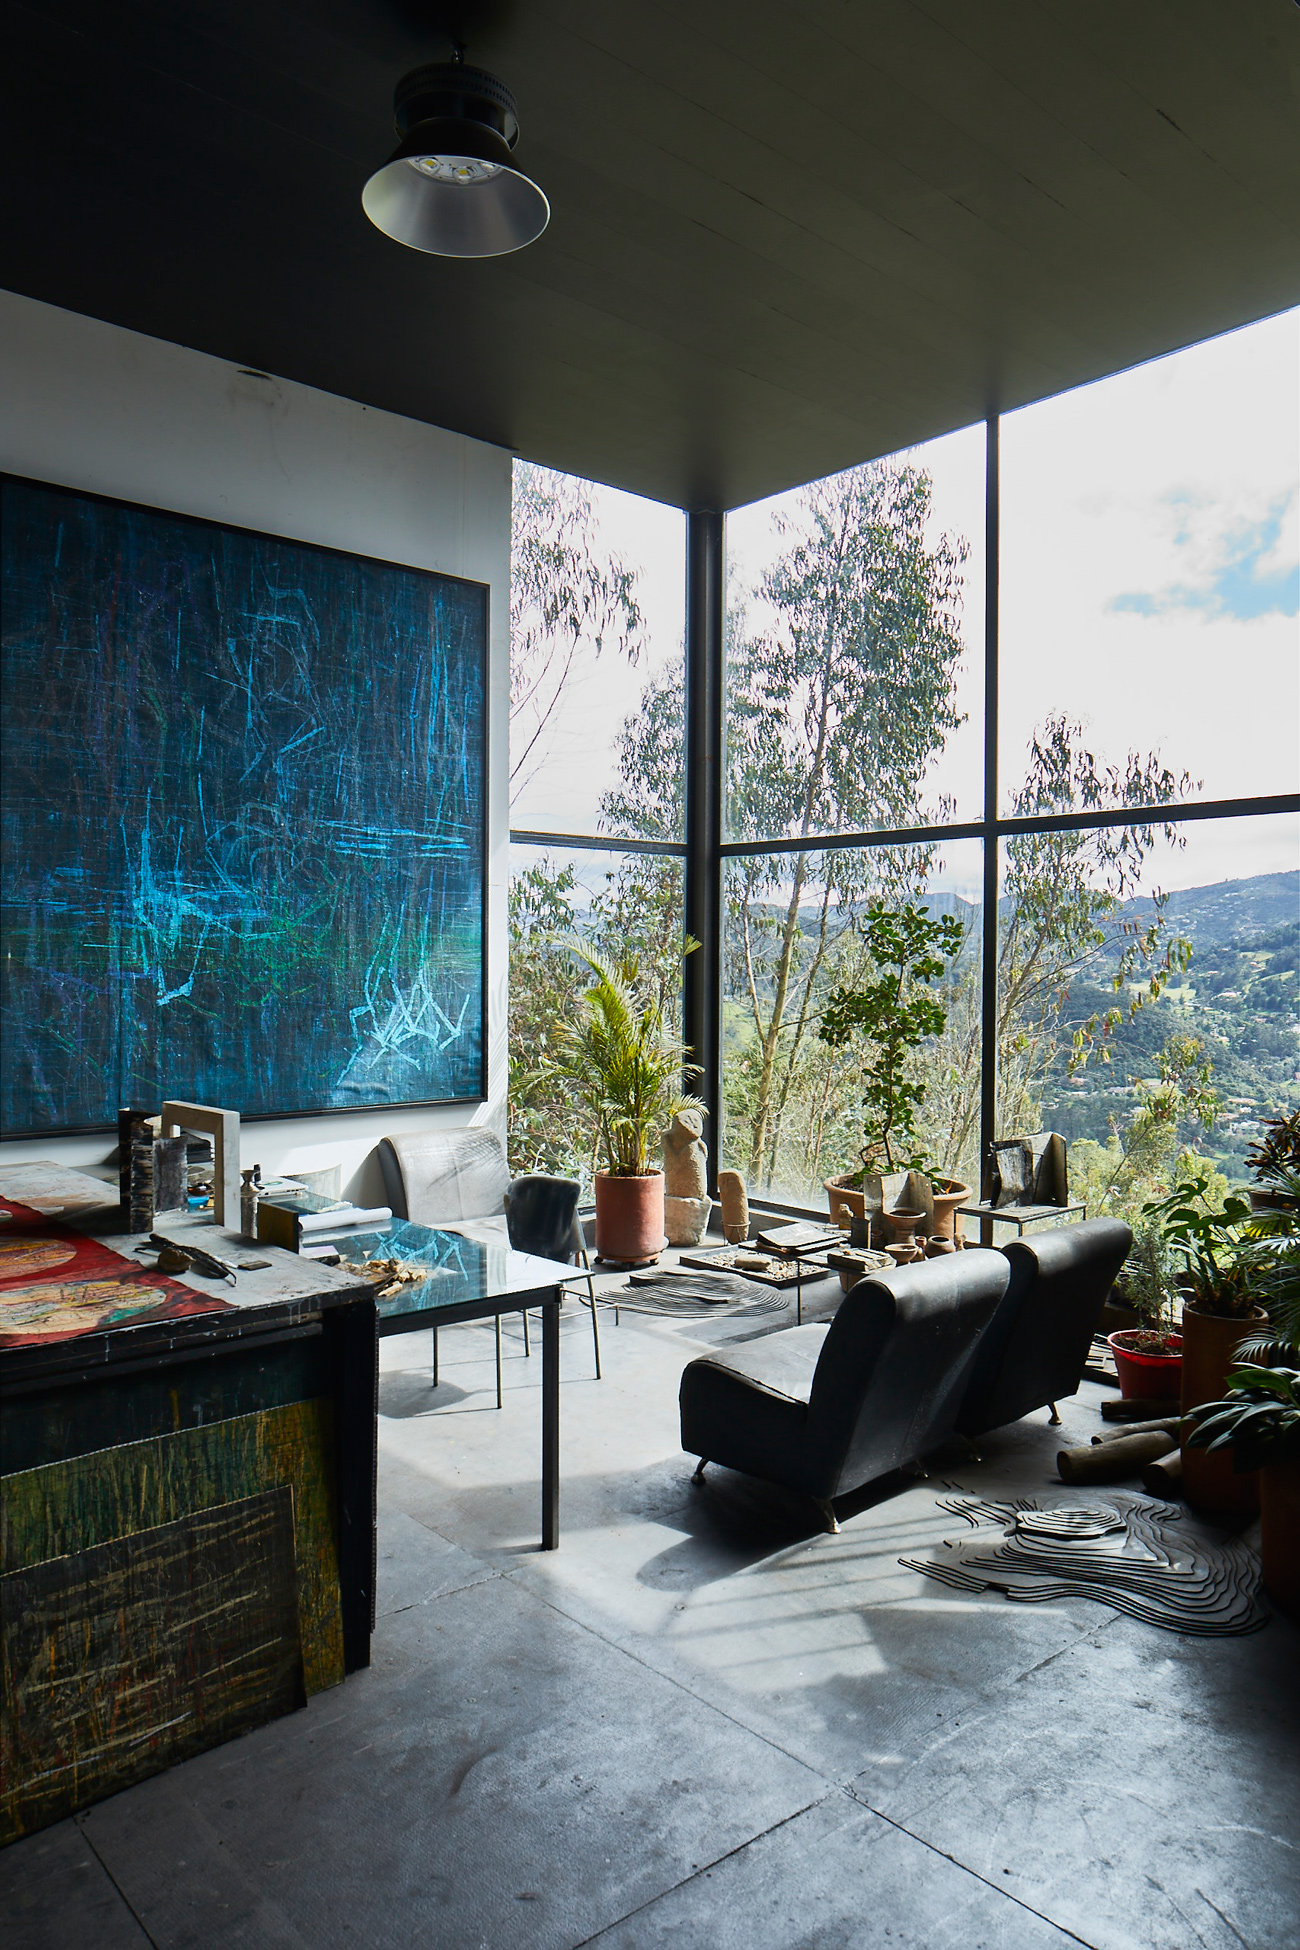 62A0003 Esta extraordinaria casa privilegiada por la luz natural tiene la mejor vista de Bogotá y sus alrededores